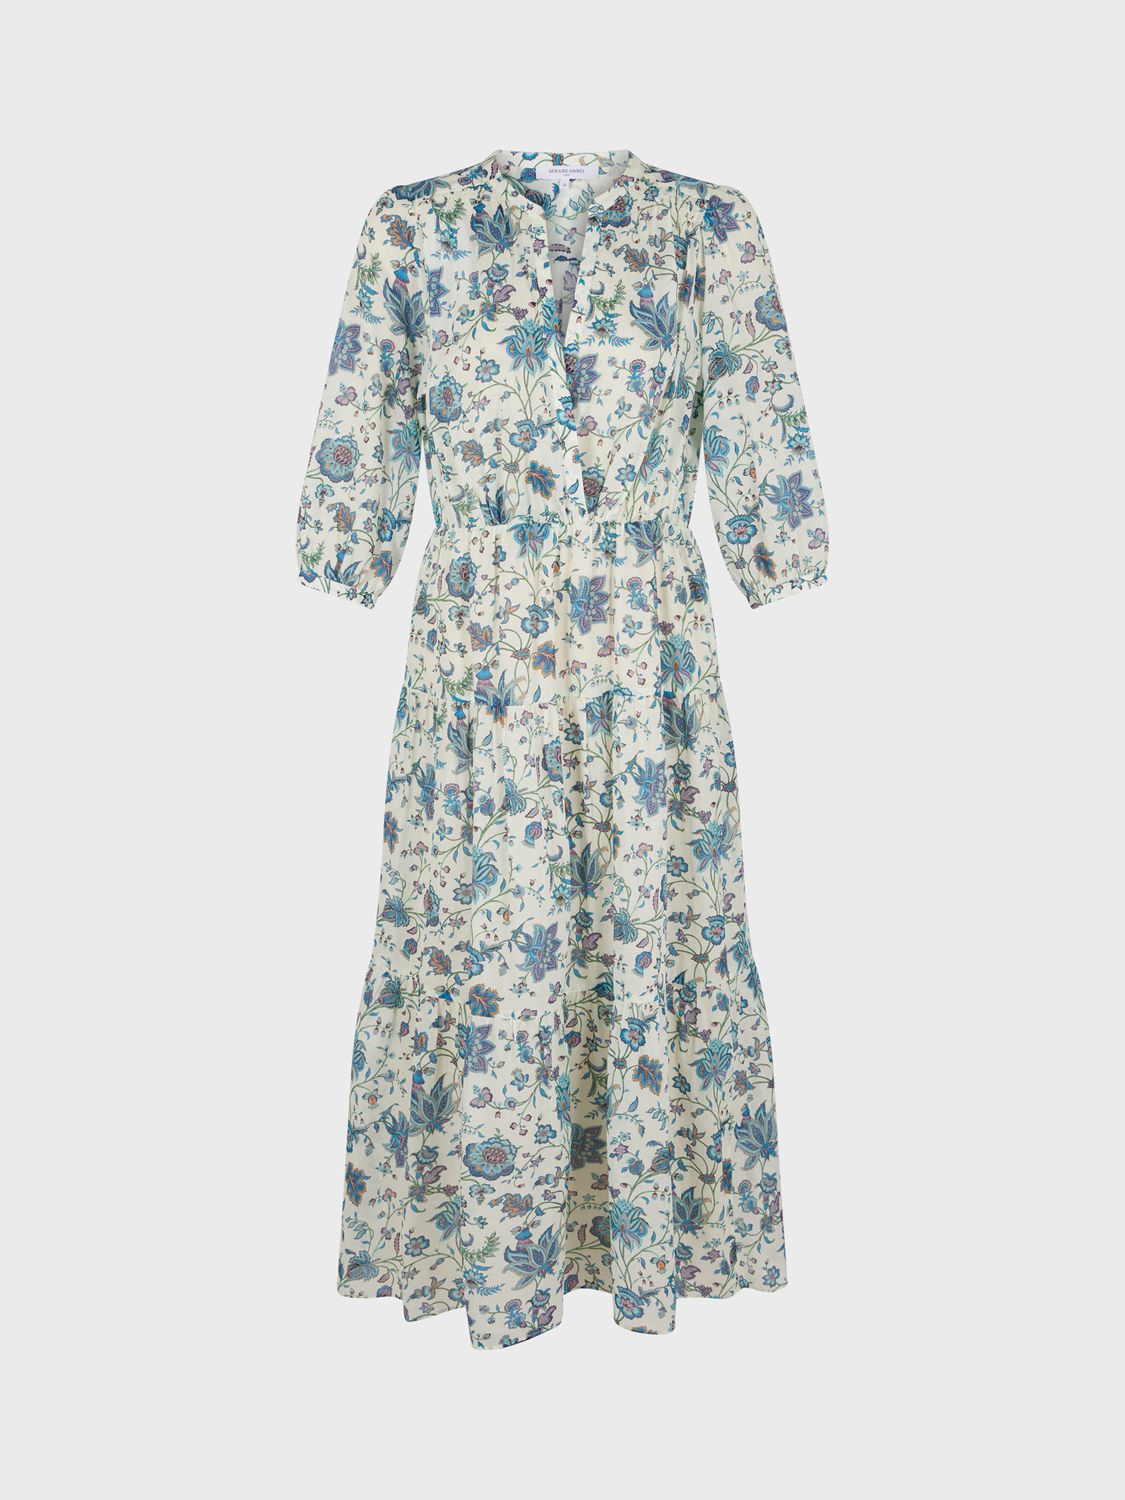 Gerard Darel Elysee Floral Tiered Dress, Ecru/Multi, 6